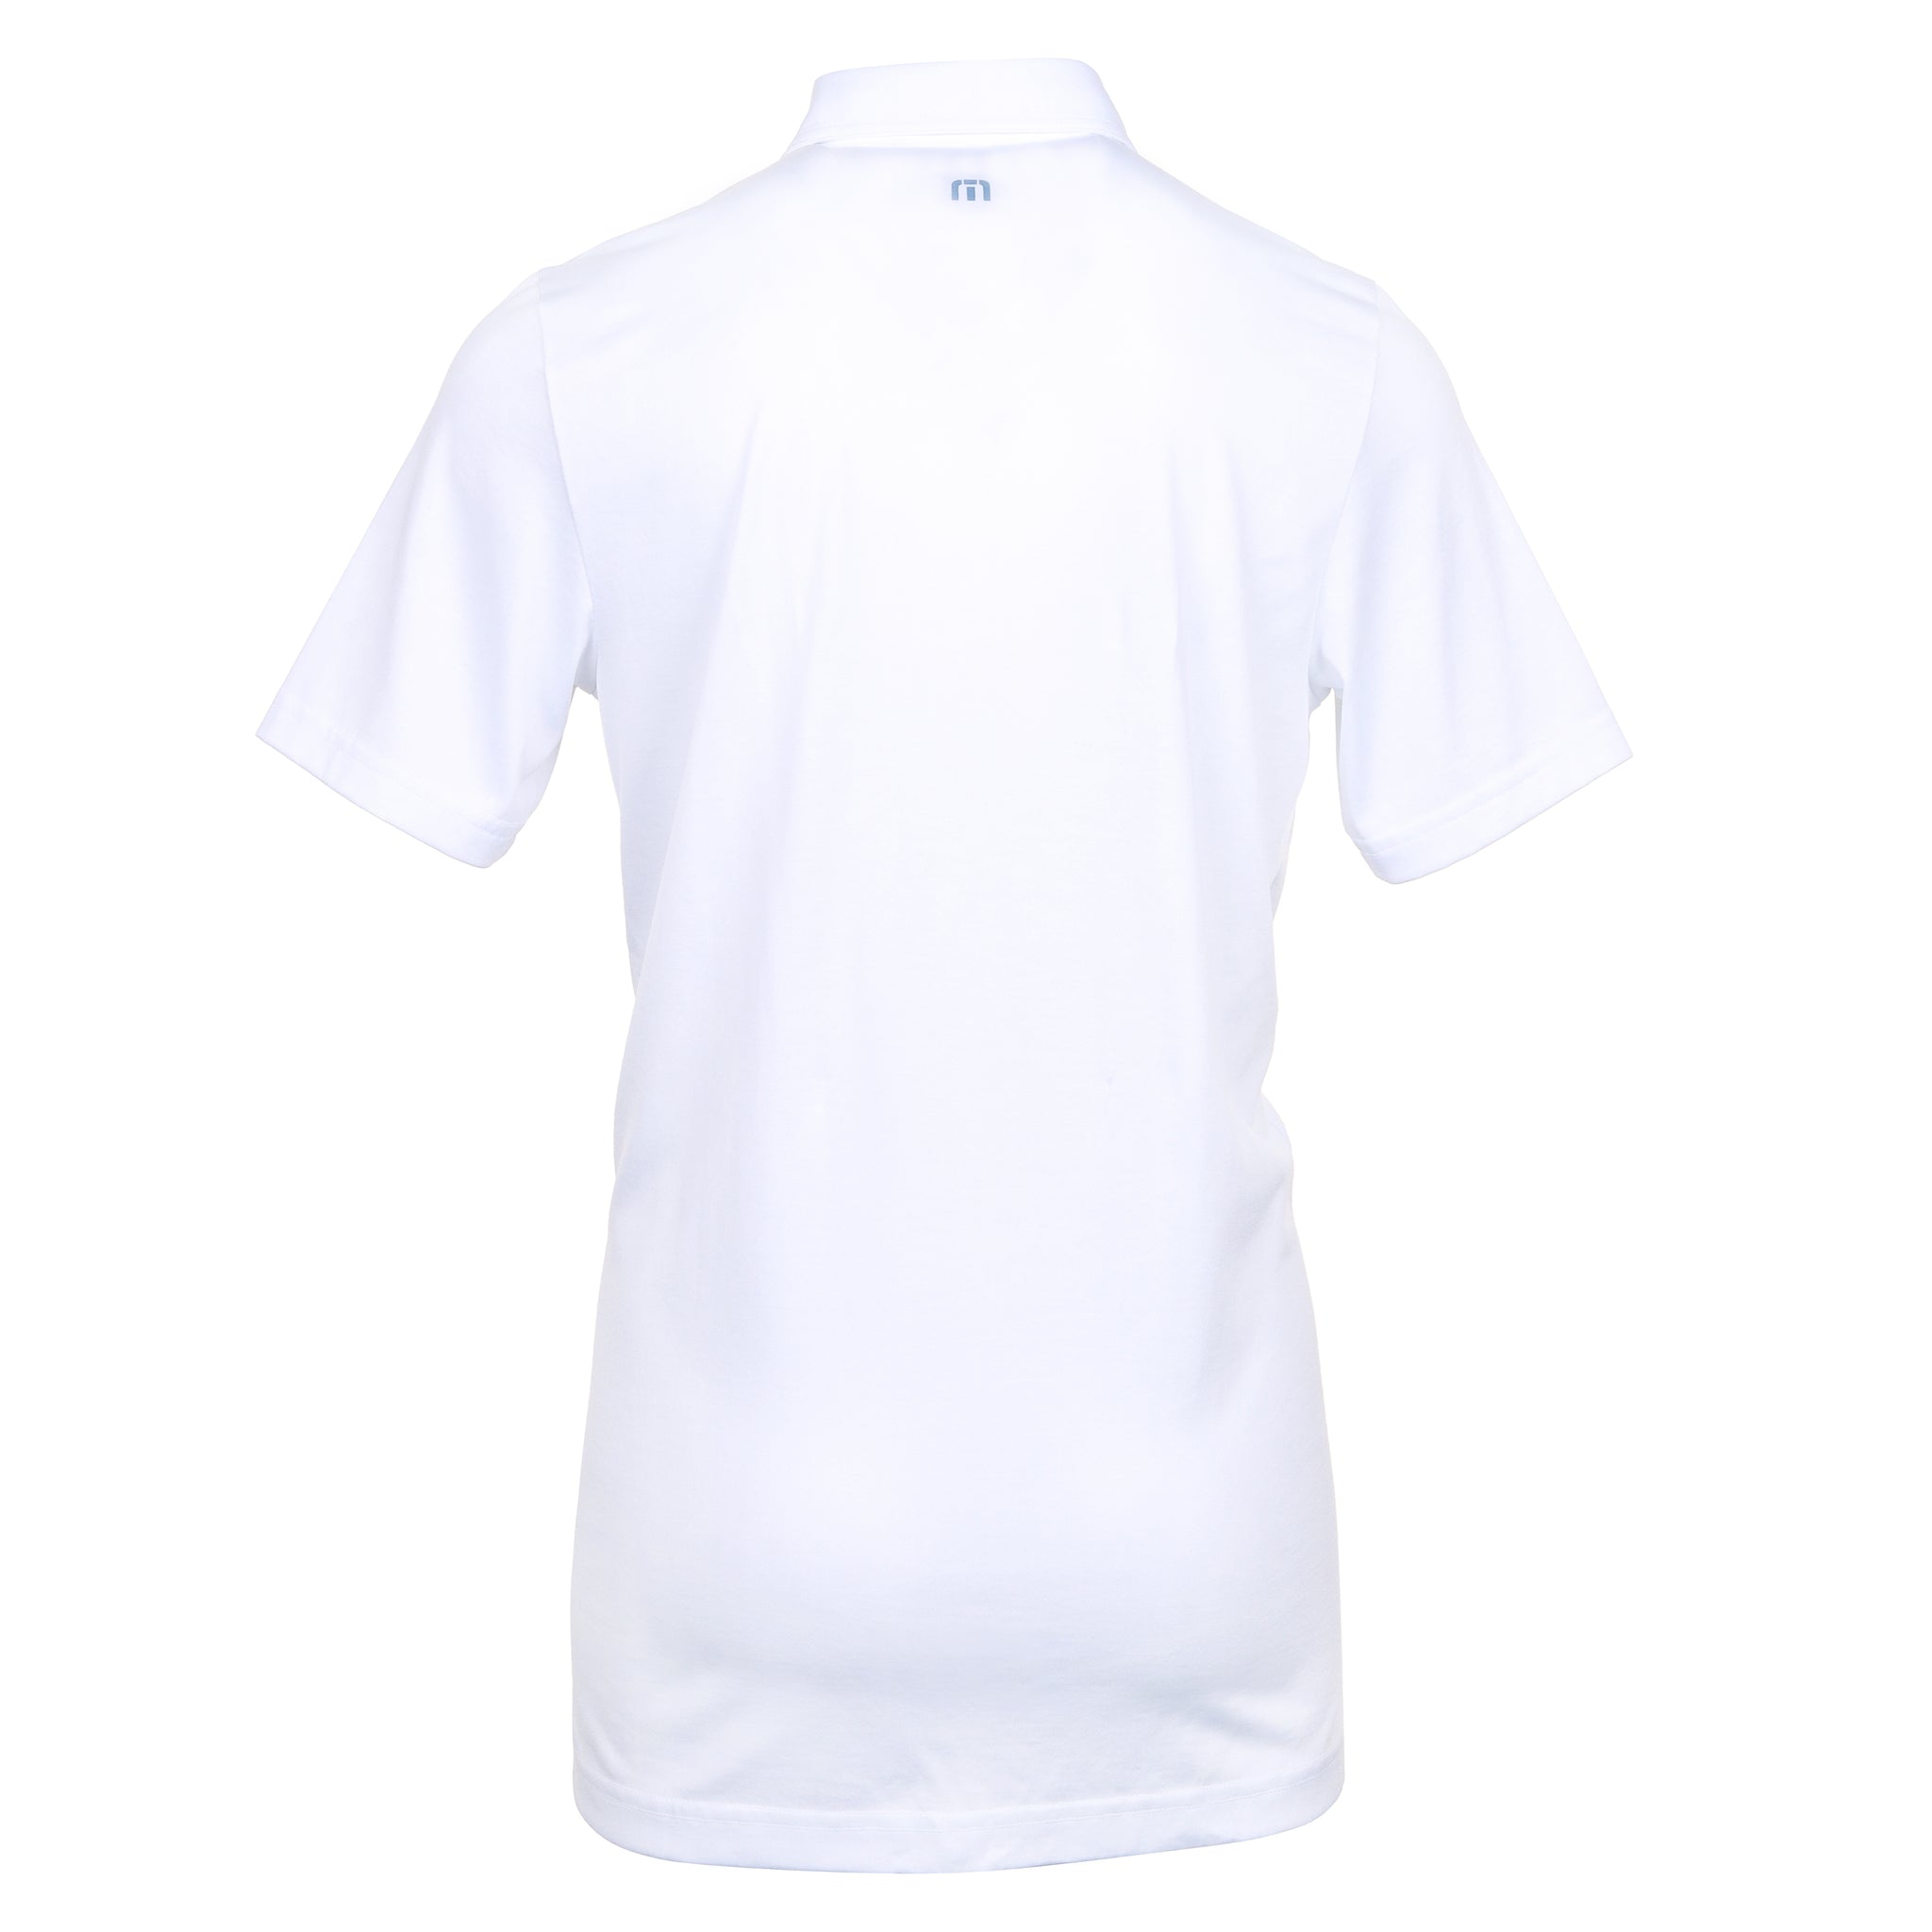 travismathew-ocean-time-polo-shirt-1maa014-white